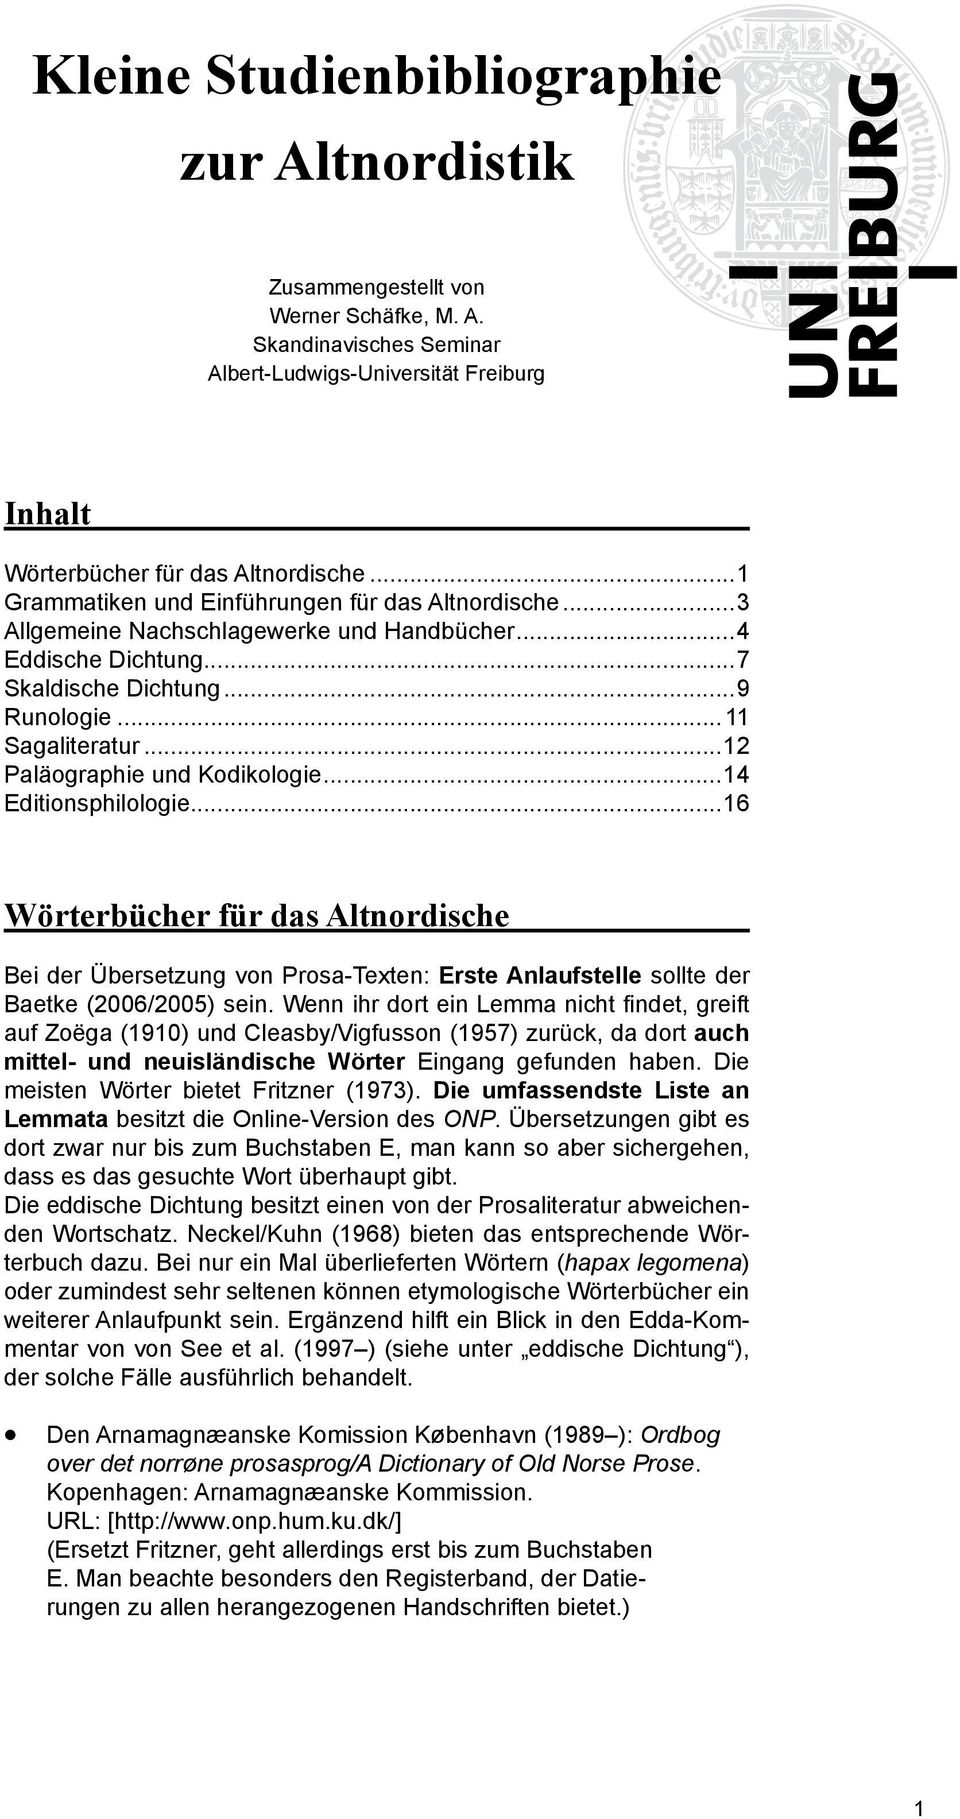 ..12 Paläographie und Kodikologie...14 Editionsphilologie...16 Wörterbücher für das Altnordische Bei der Übersetzung von Prosa-Texten: Erste Anlaufstelle sollte der Baetke (2006/2005) sein.